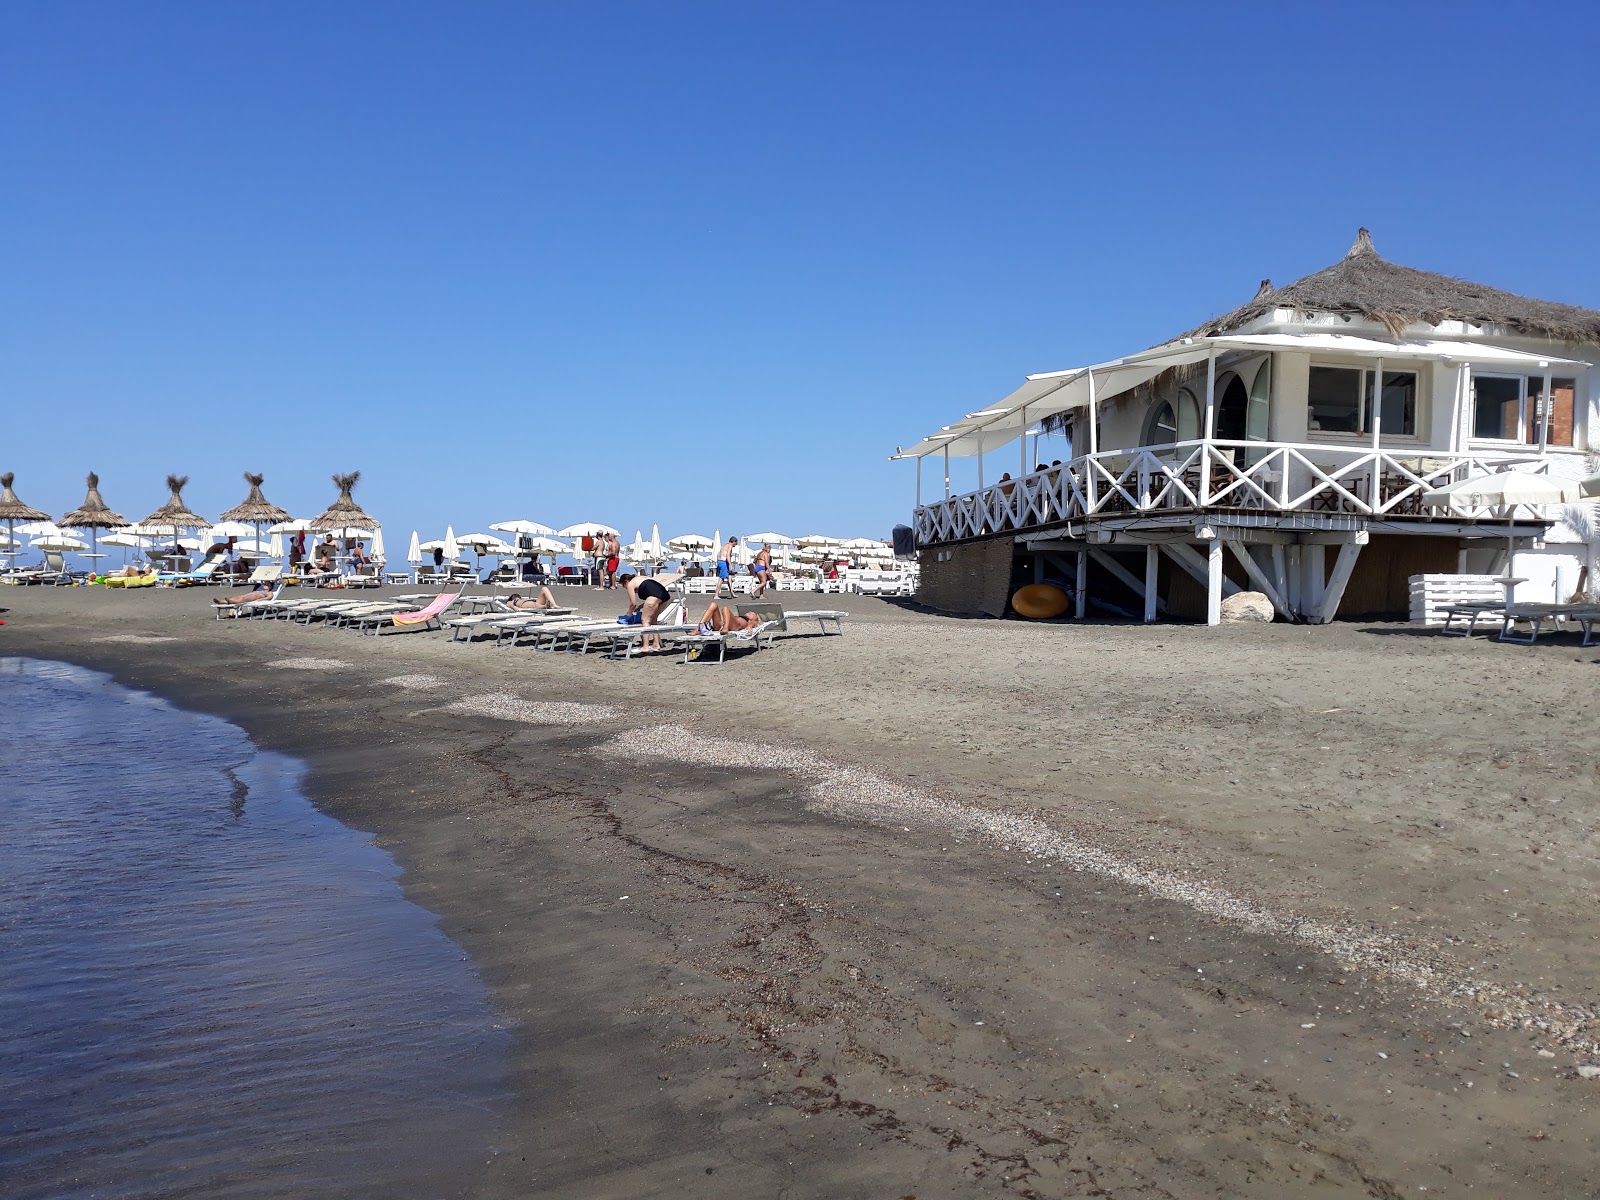 Zdjęcie Ladispoli beach z poziomem czystości wysoki